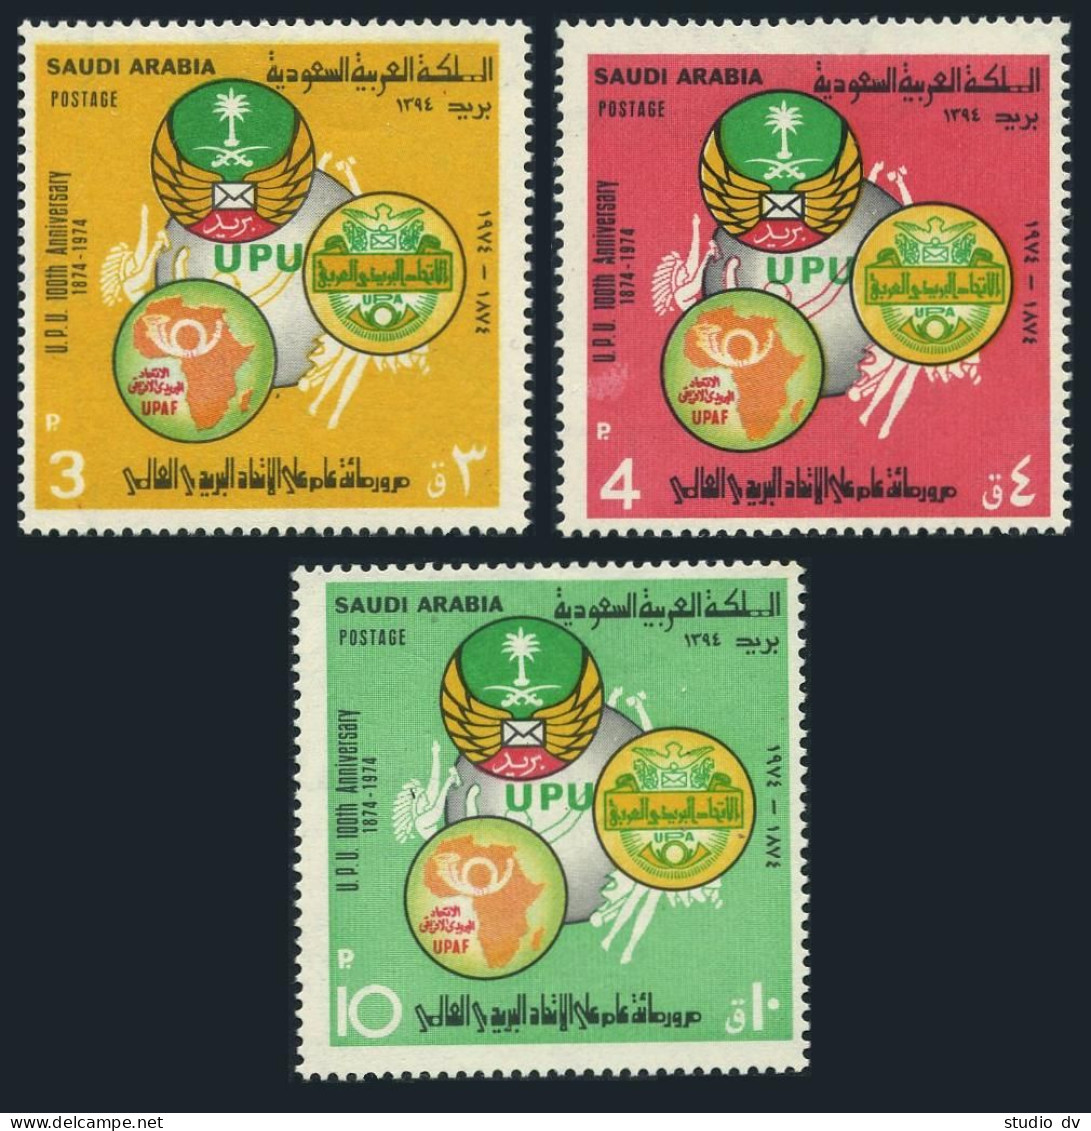 Saudi Arabia 645-647, MNH. Michel 554-556. UPU-100, 1974. Arab Postal Emblem. - Saudi Arabia